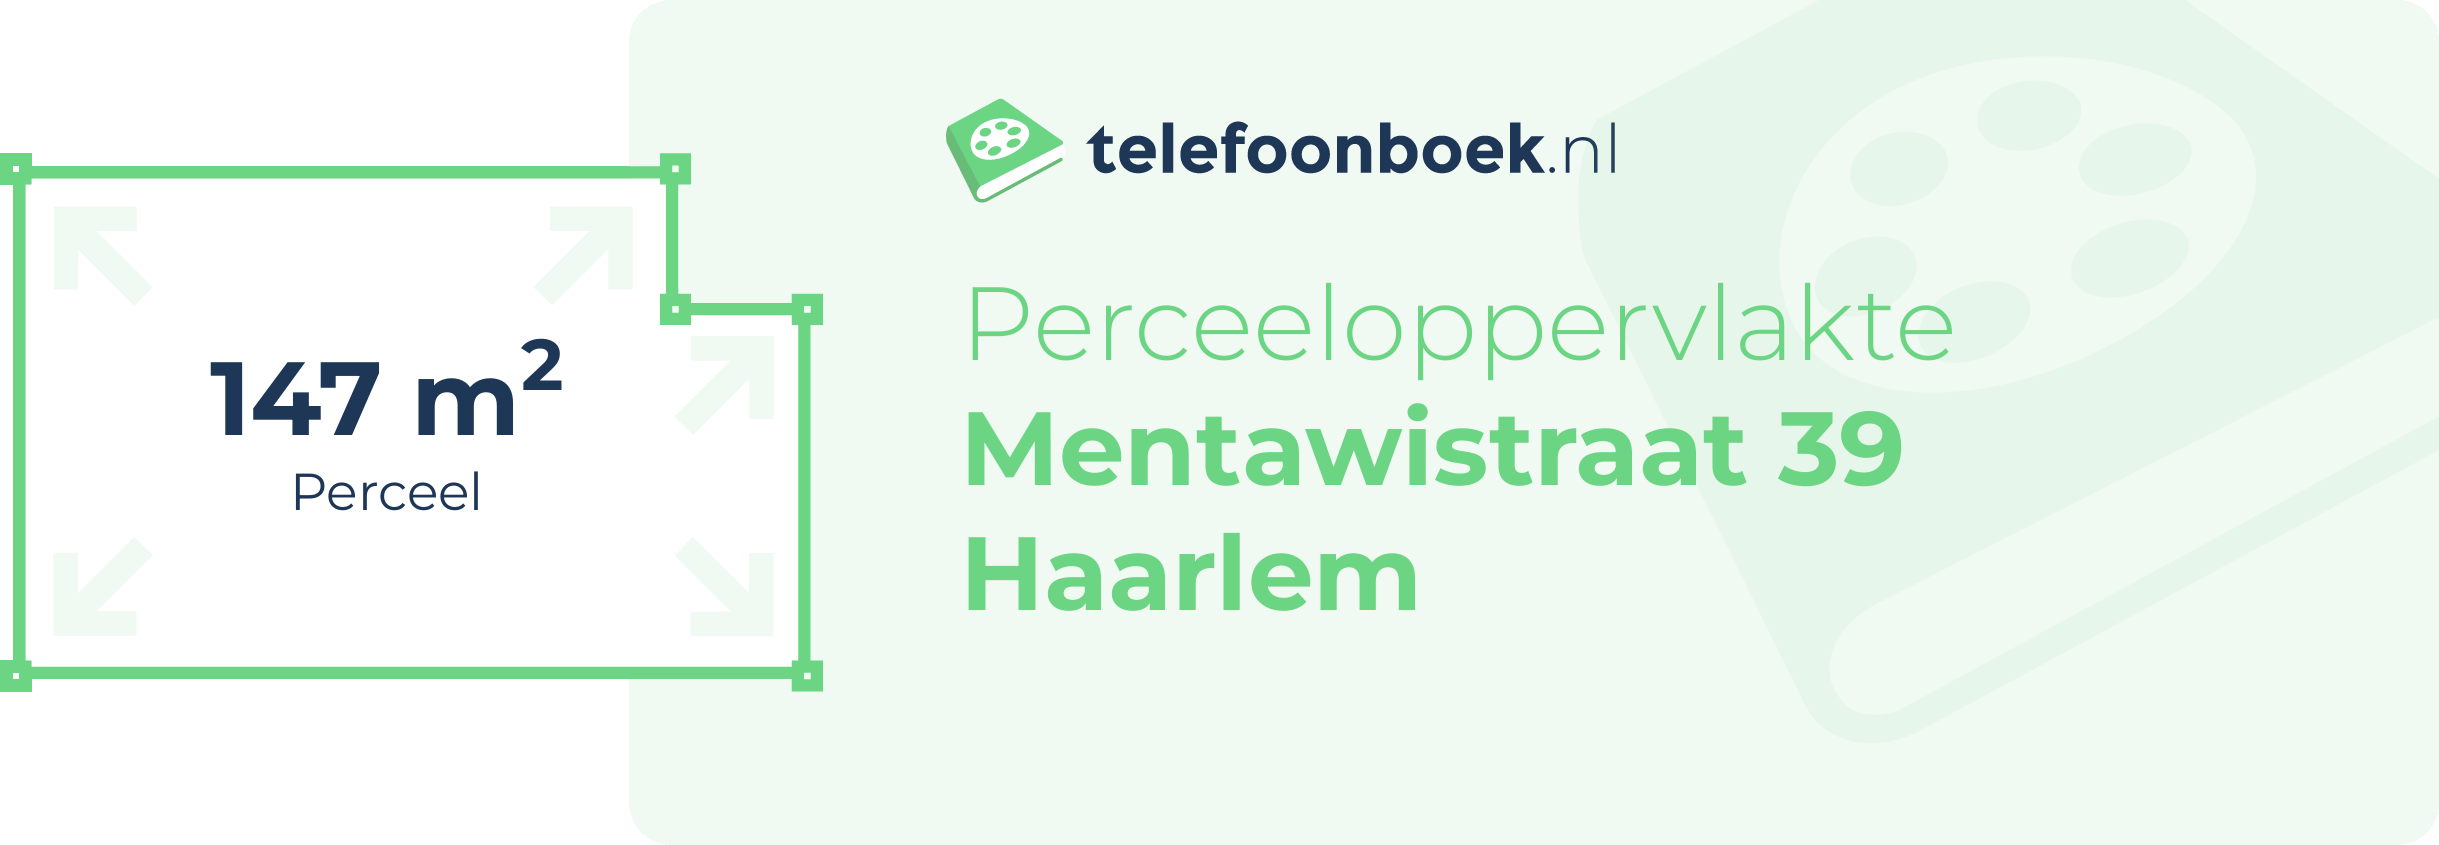 Perceeloppervlakte Mentawistraat 39 Haarlem